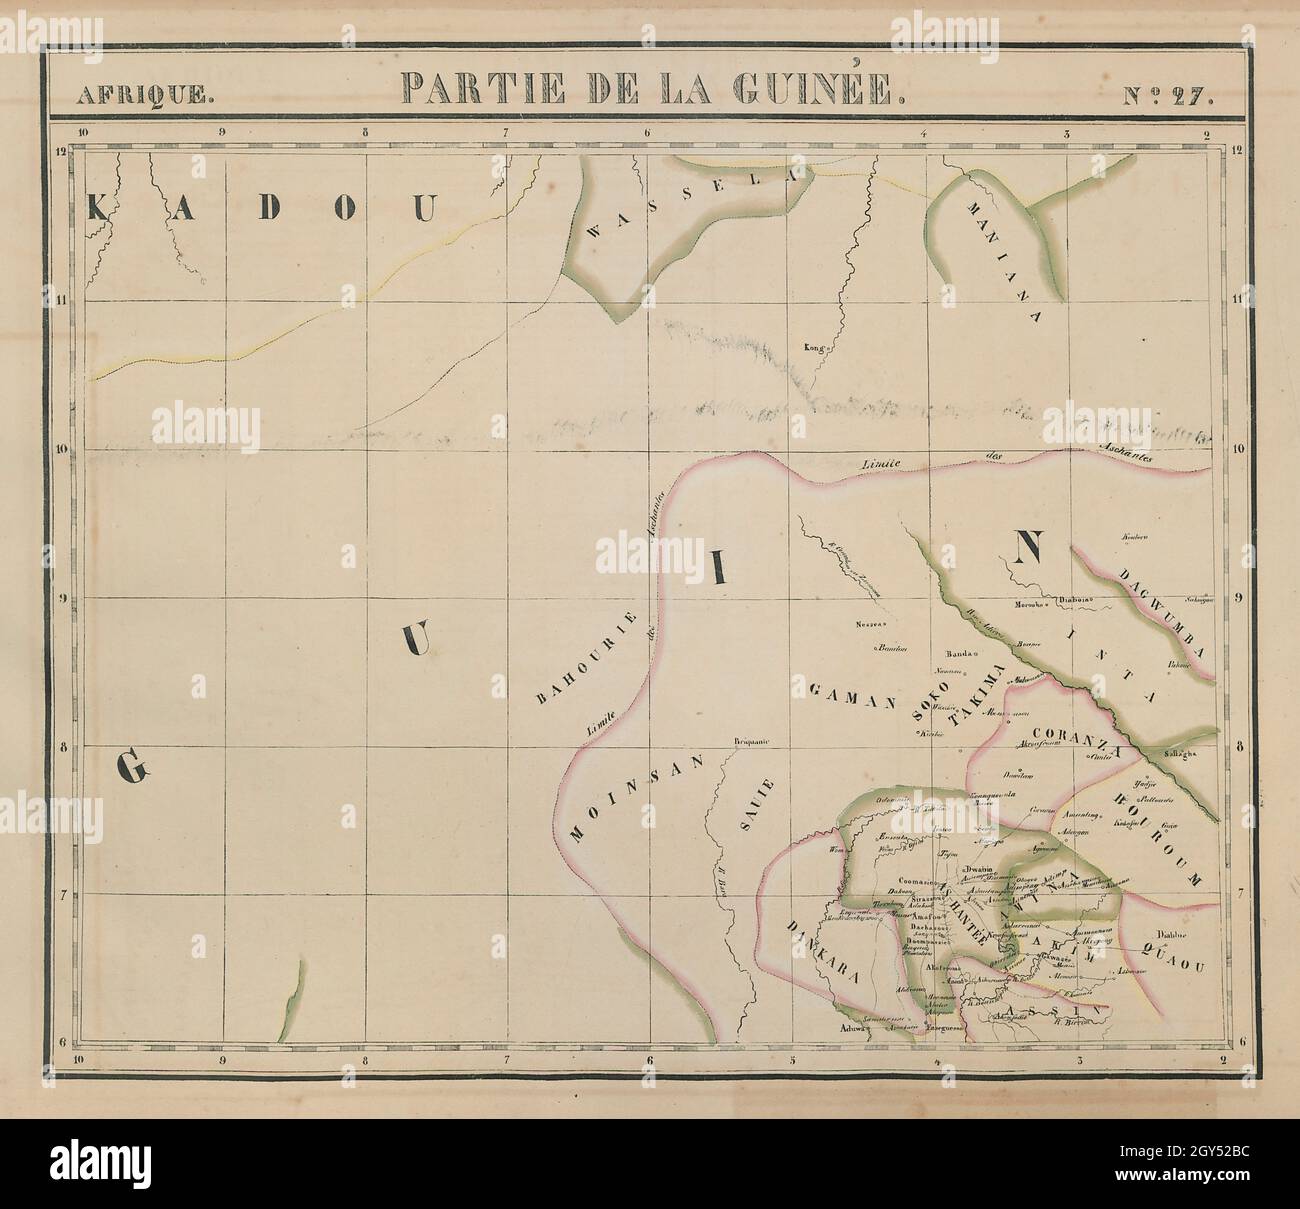 Afrique.Partie de la Guinée #27.Ghana.VANDERMAELEN 1827 carte ancienne Banque D'Images